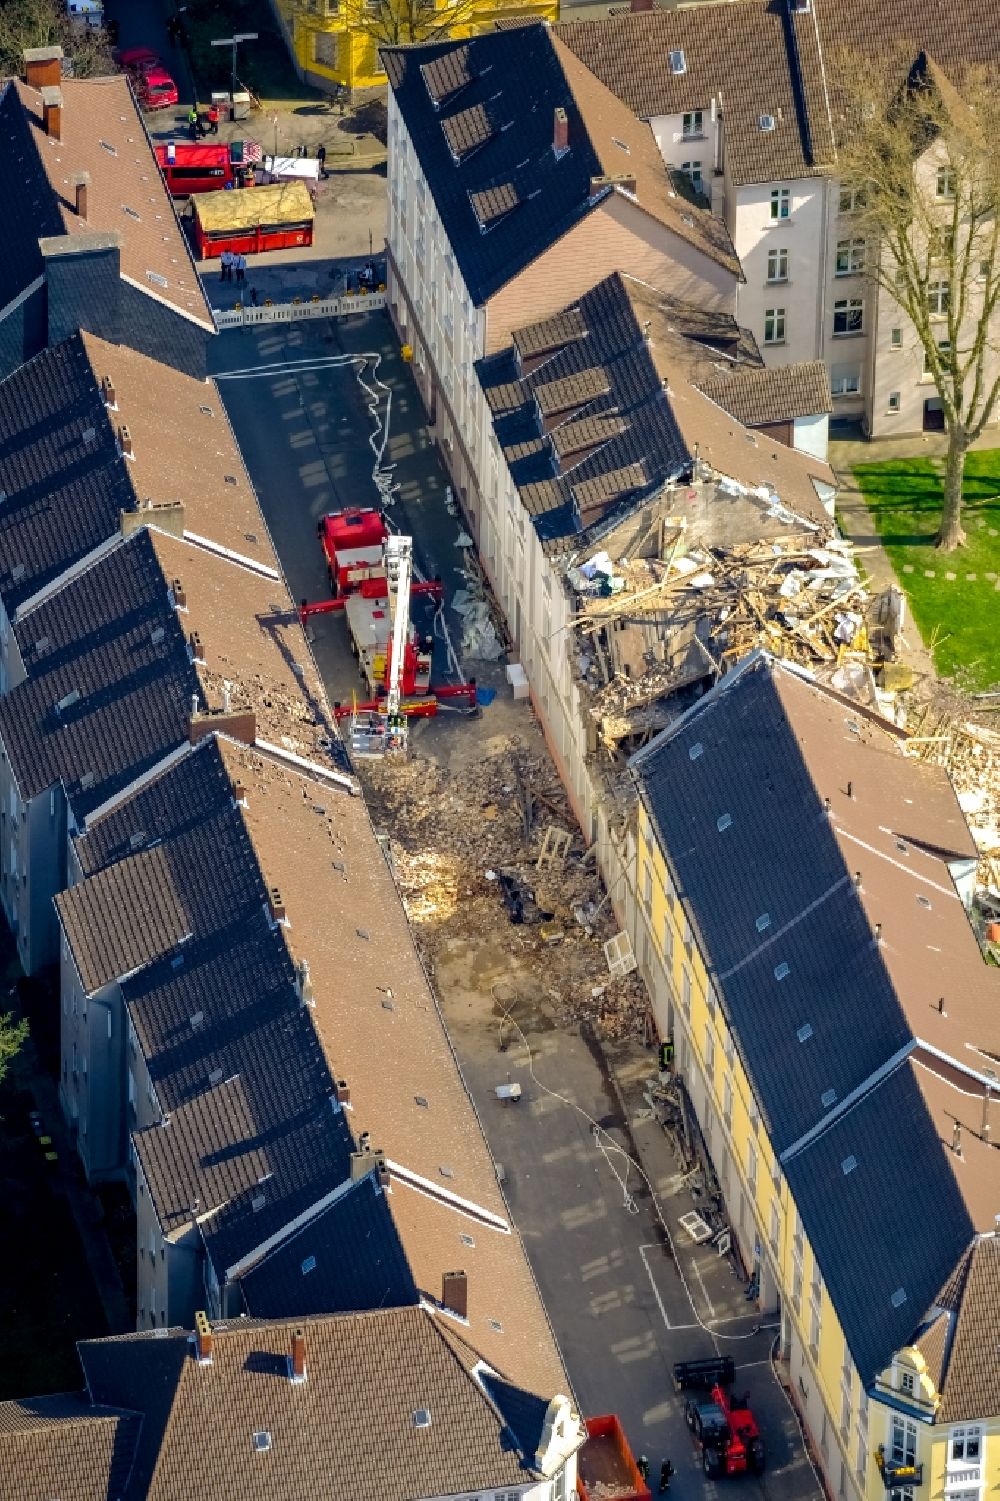 Luftbild Dortmund - Explosion im Dachbereich in einem Reihenhaus der Mehrfamilienhaussiedlung Teutonenstraße im Ortsteil Hörde in Dortmund im Bundesland Nordrhein-Westfalen